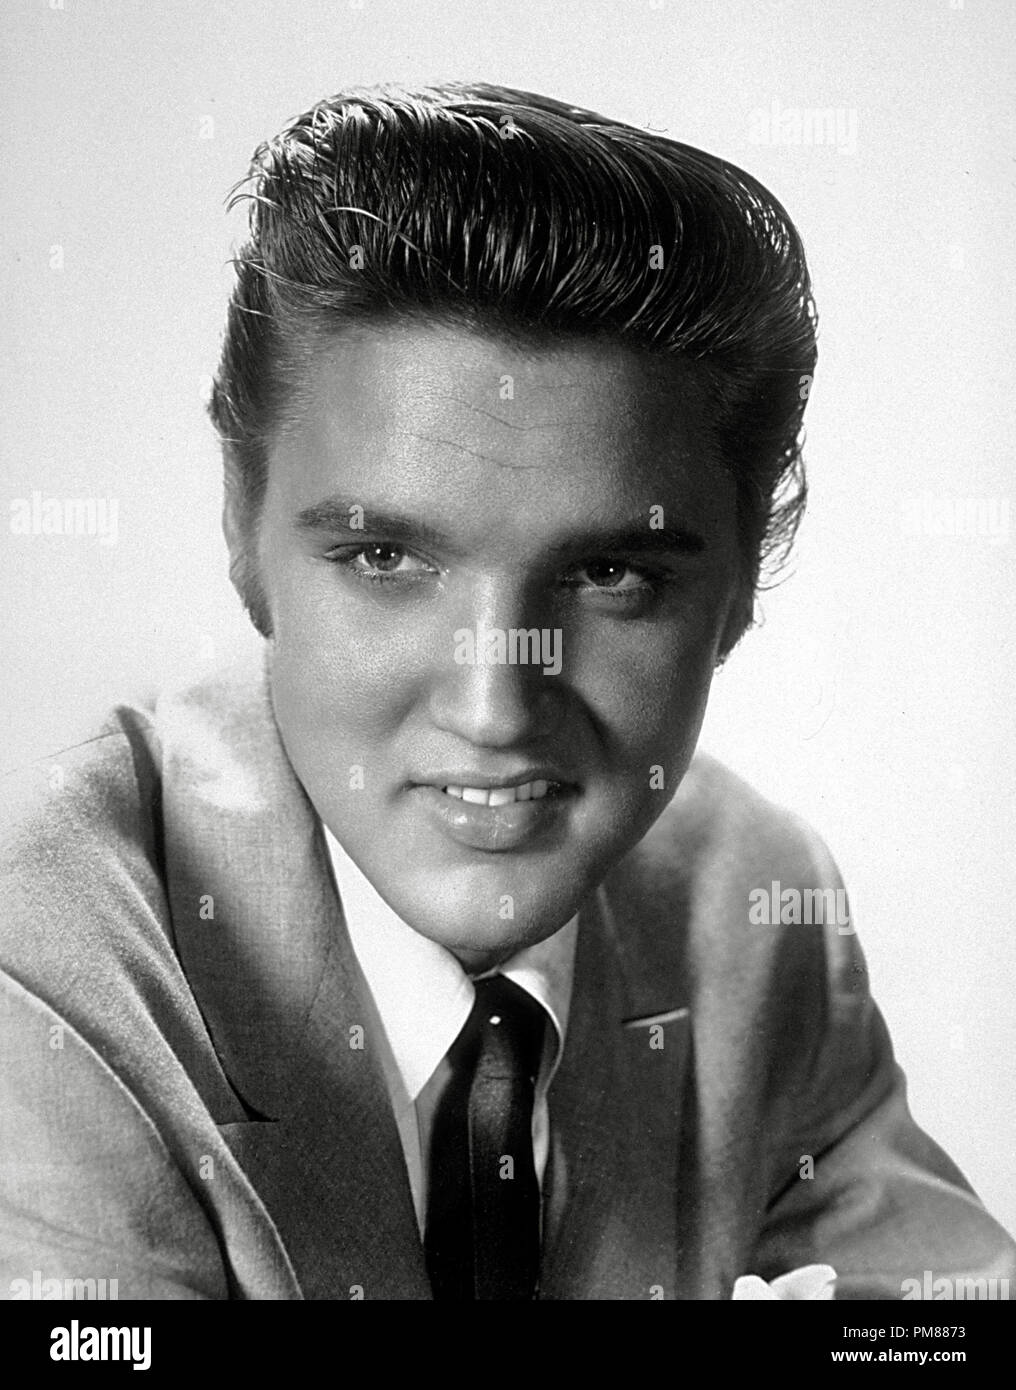 Archivierung Klassische Kino Elvis Presley Retrospektive